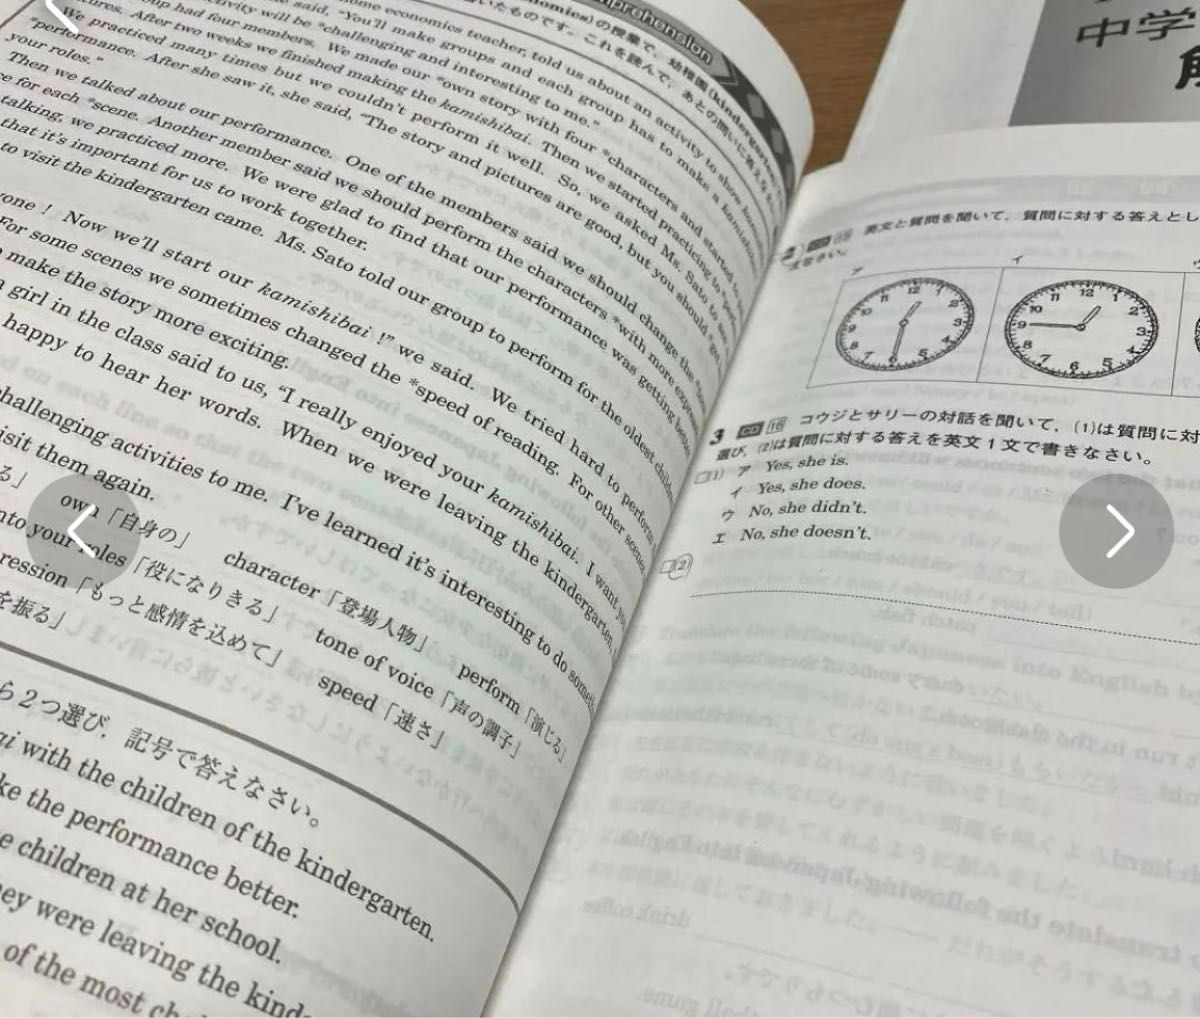 馬渕教室　高校受験コースFinal 中学3年　英語　I 、II  ２冊　　　